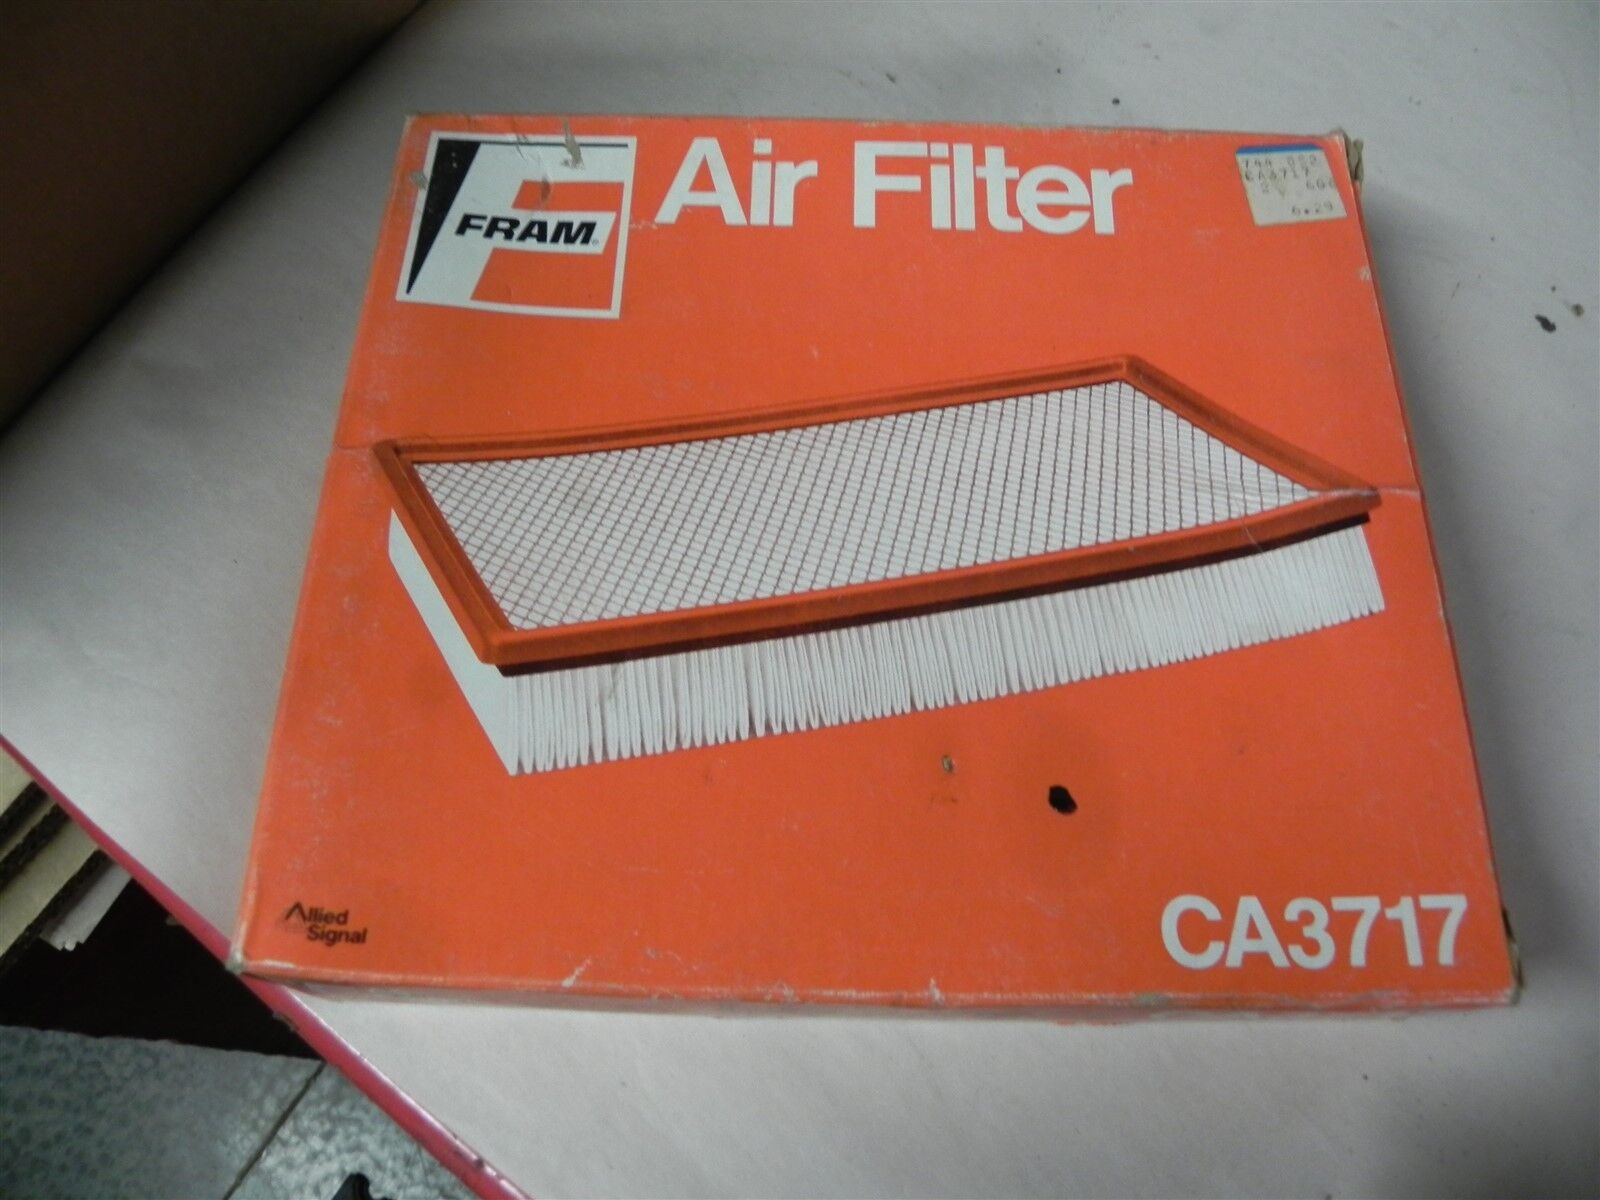 1984-1989 FORD FRAM AIR FILTER CA3717 A929C FA971 MOTORCRAFT NAPA6132 VINTAGE 